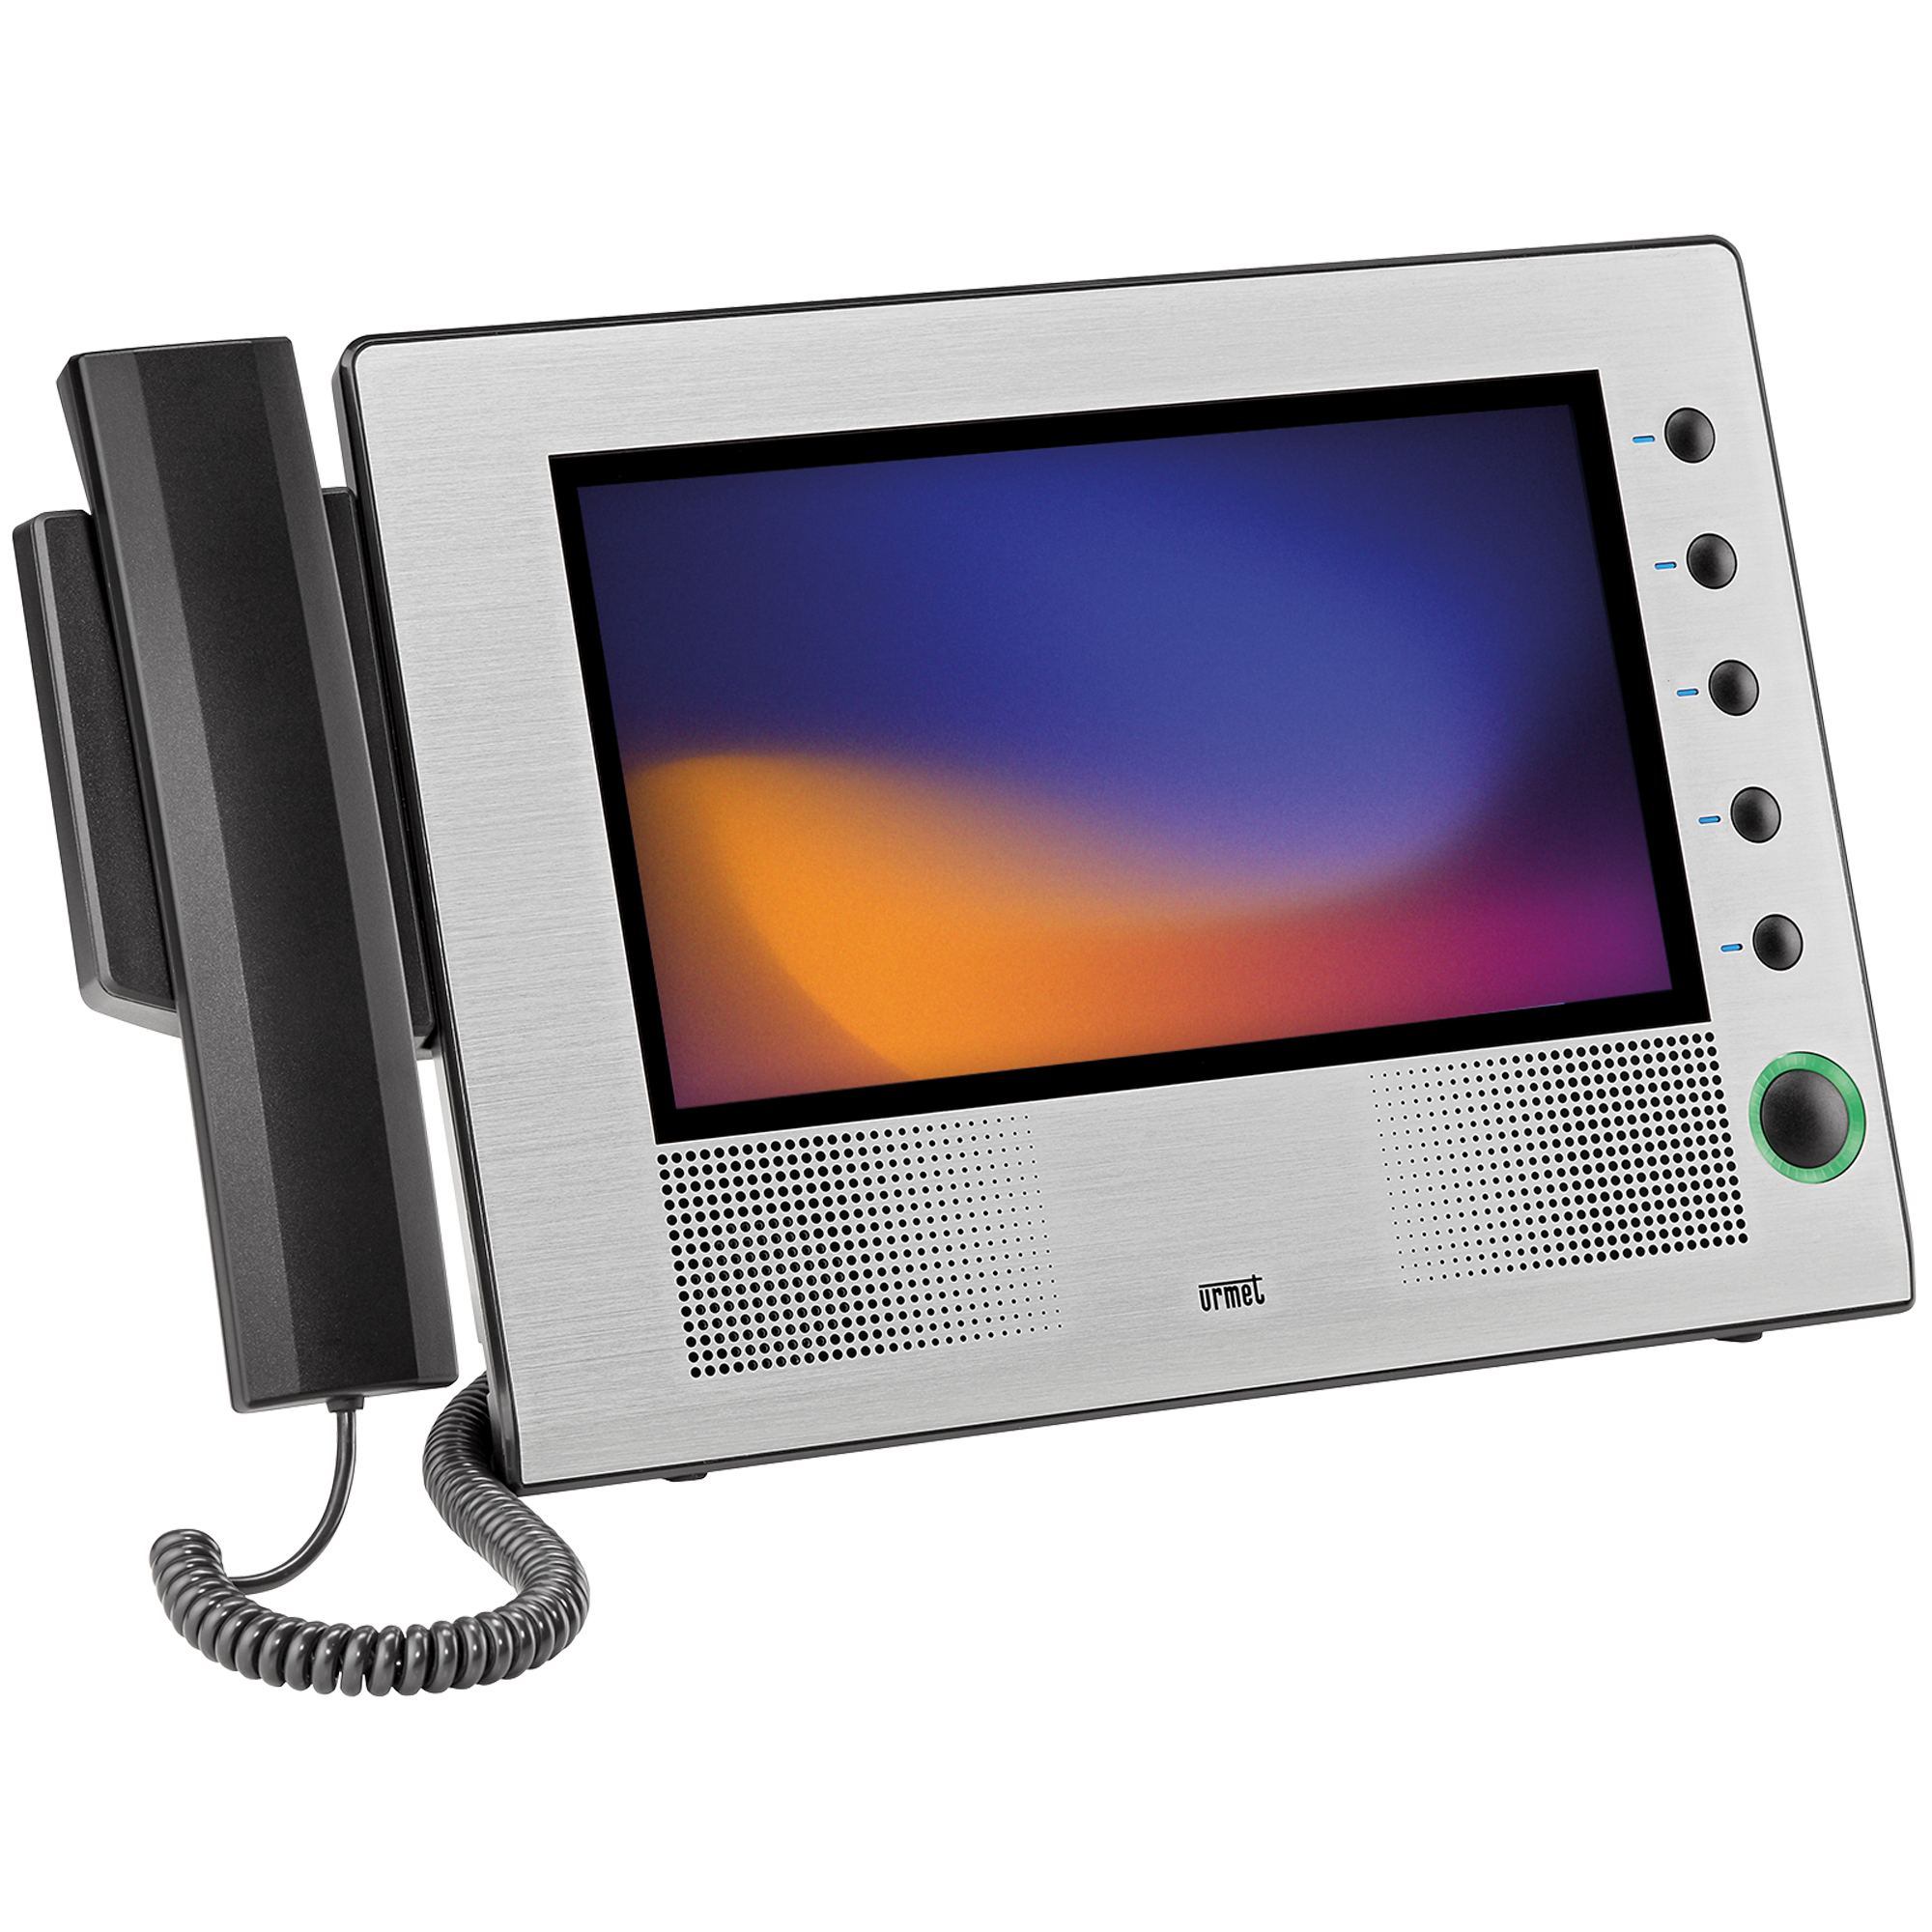 Monitor Zubehör - Video- und Sicherheitstechnik bei VIDEOR kaufen